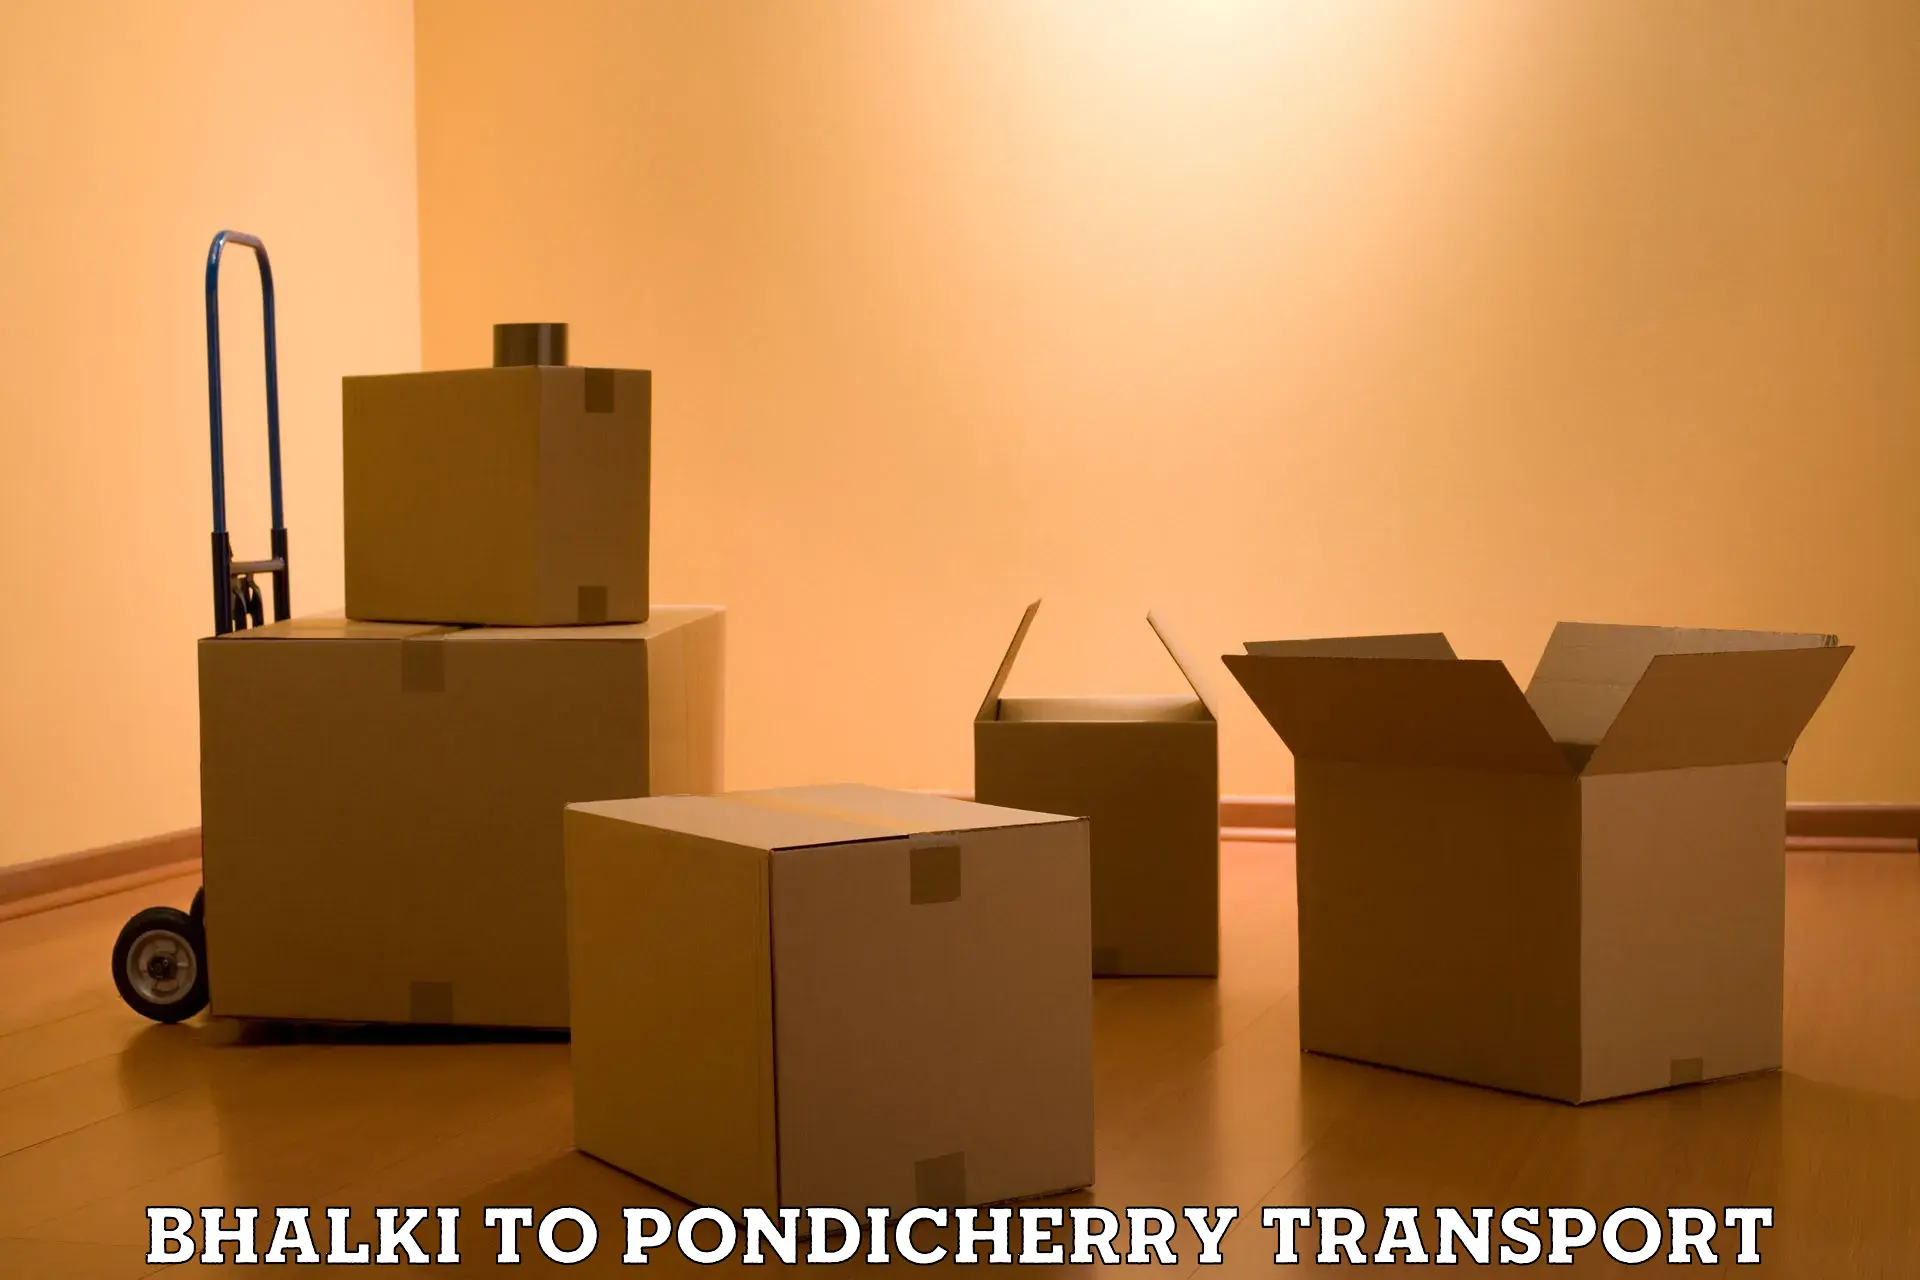 Daily transport service Bhalki to Pondicherry